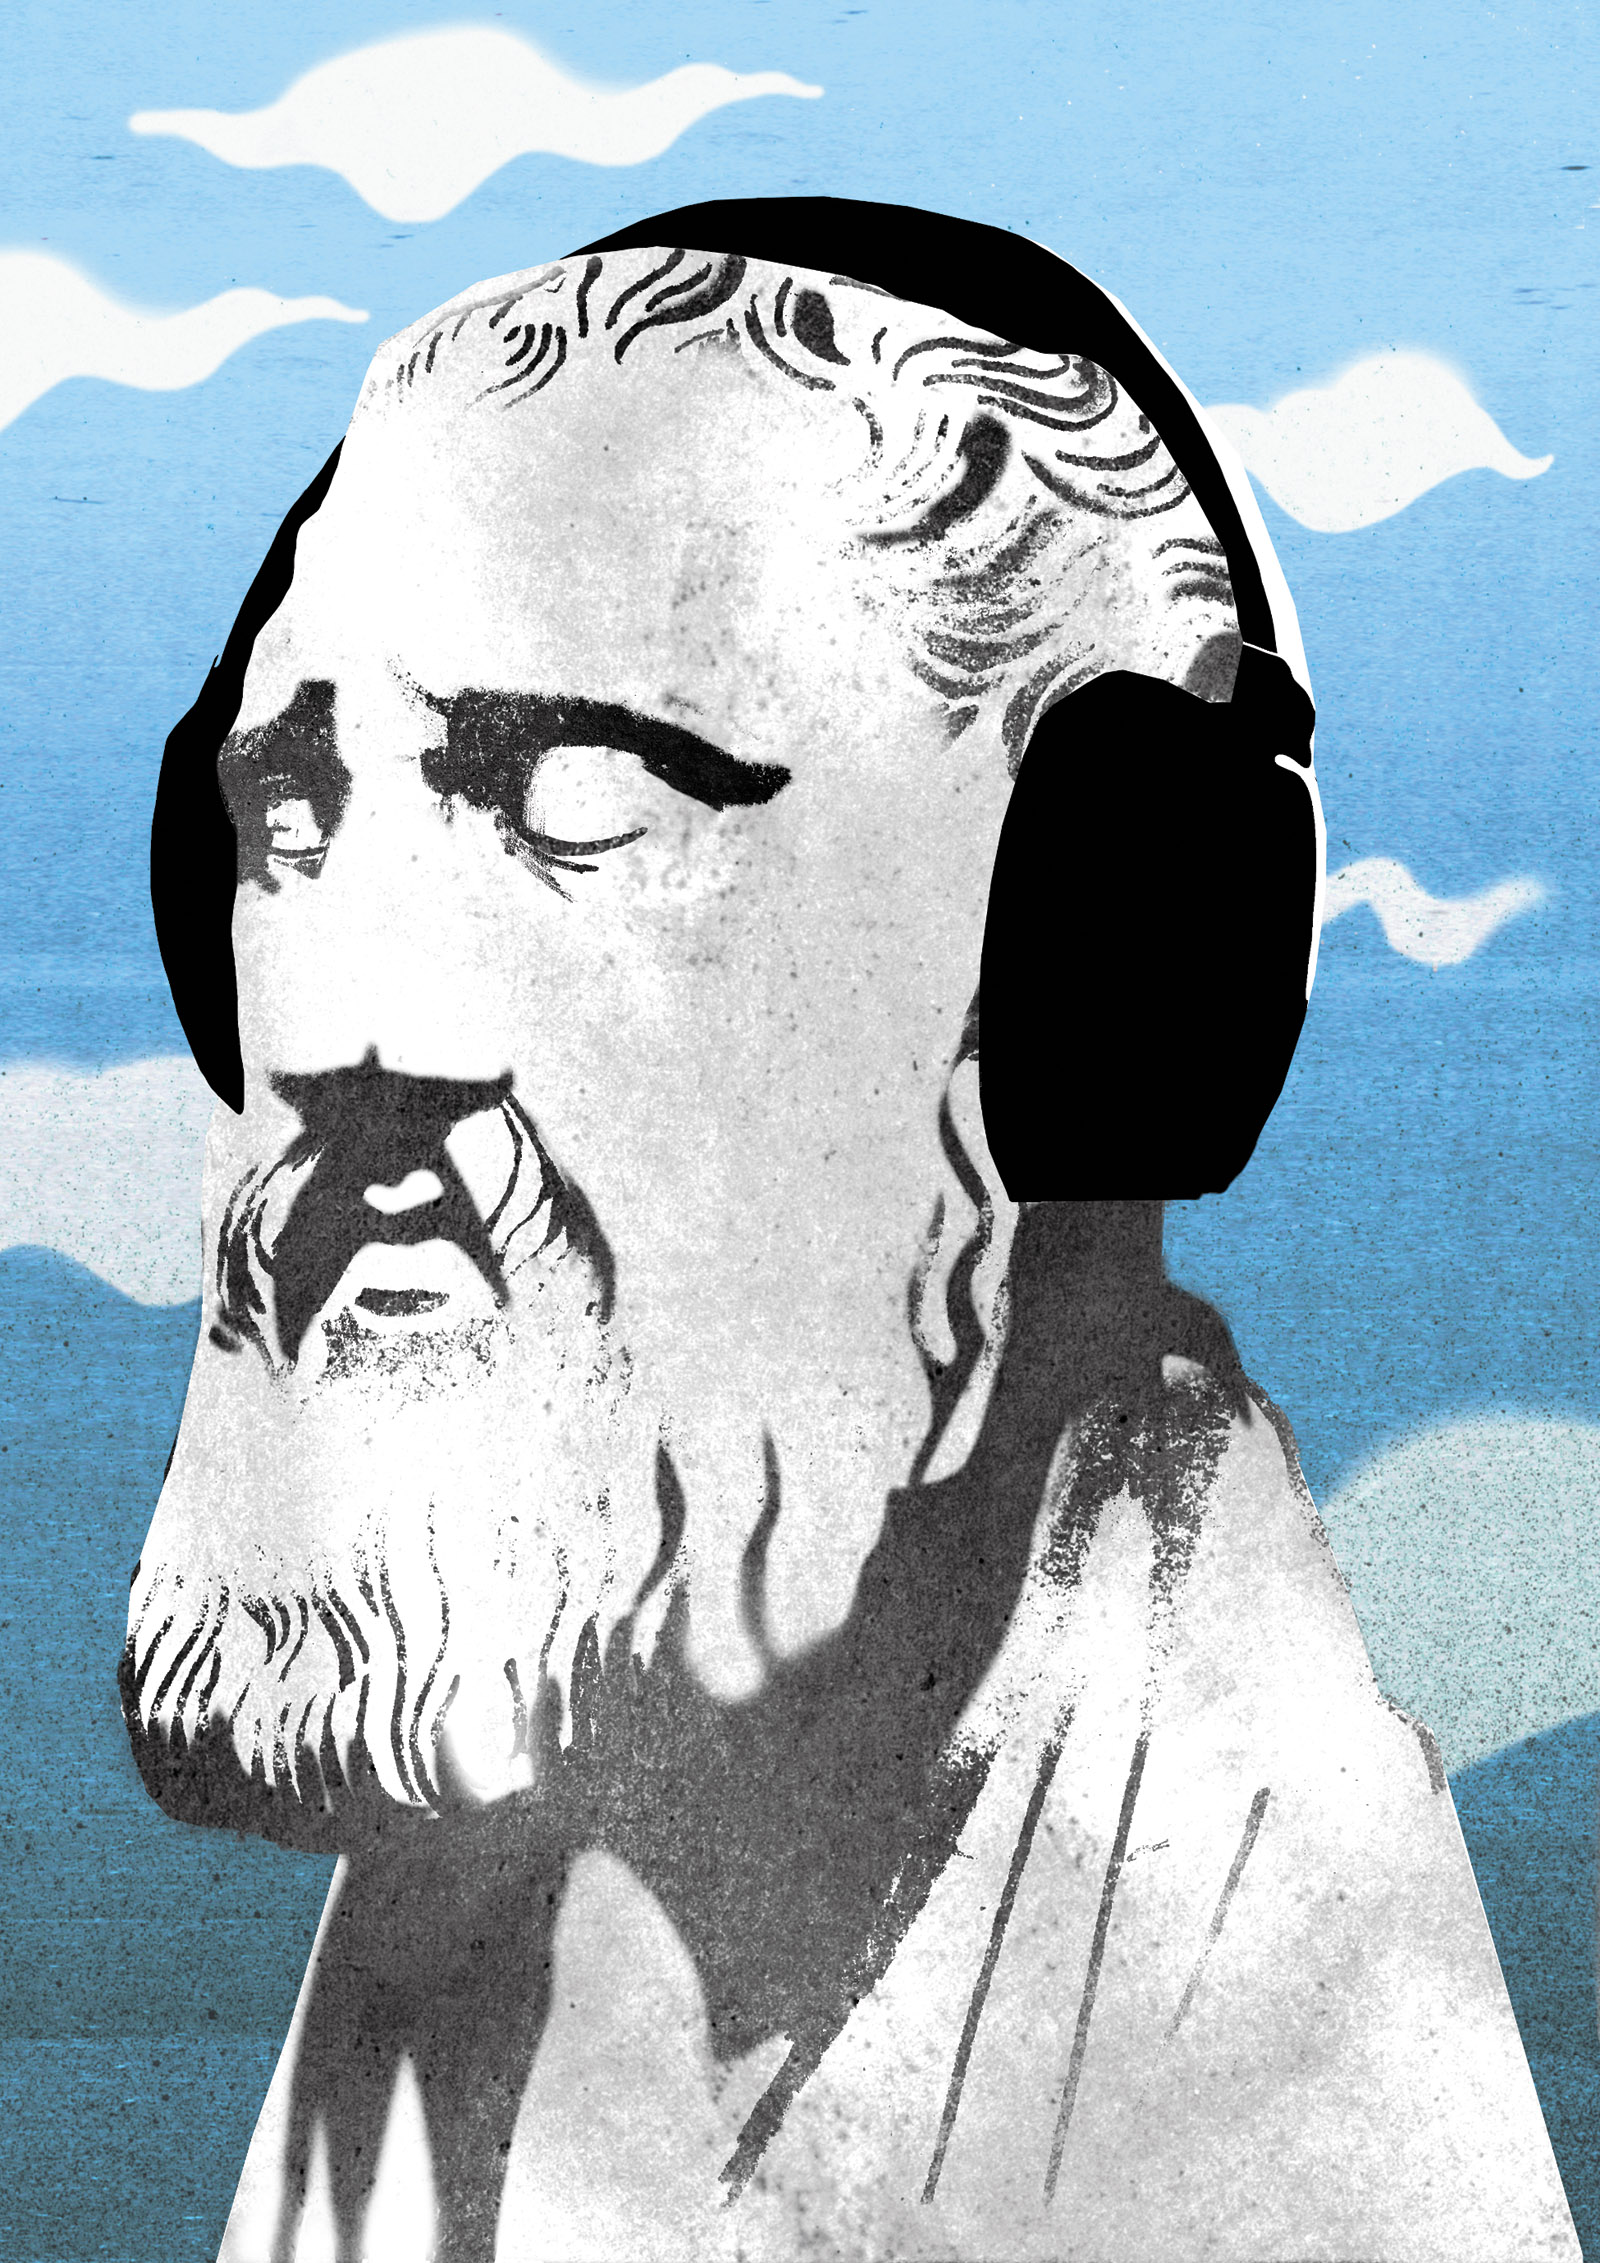 The Stoic philosopher Zeno